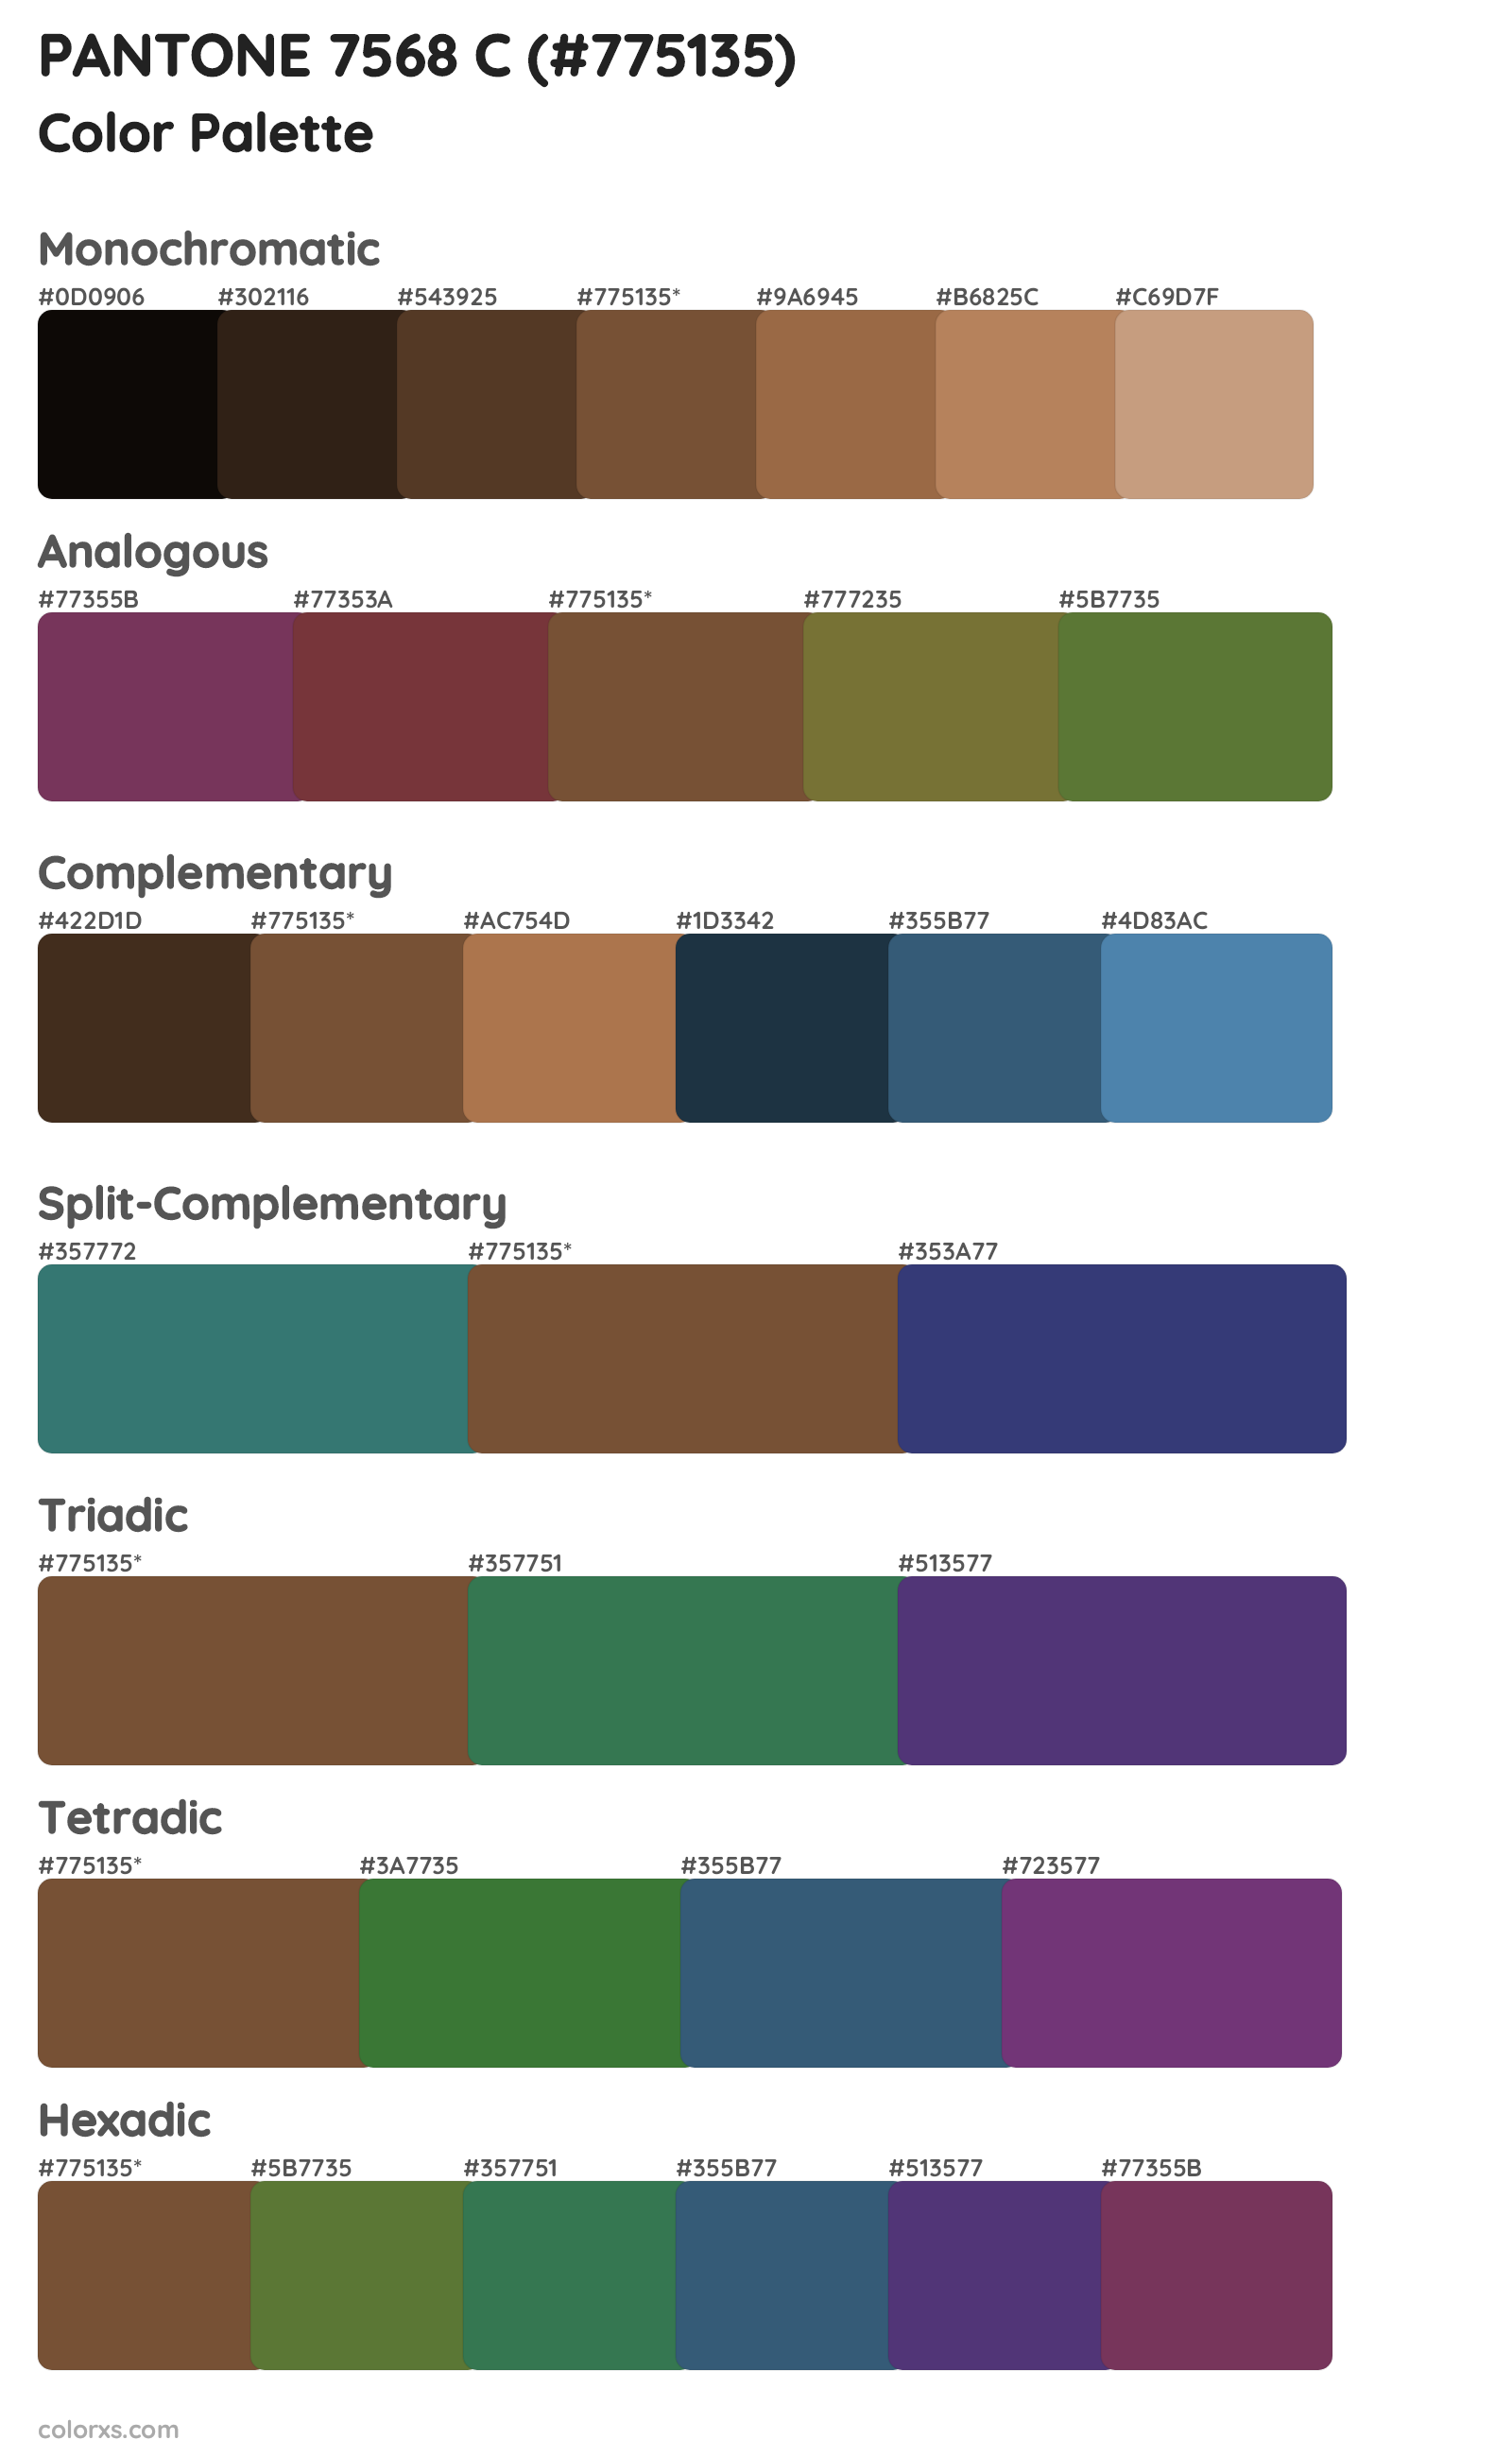 PANTONE 7568 C Color Scheme Palettes